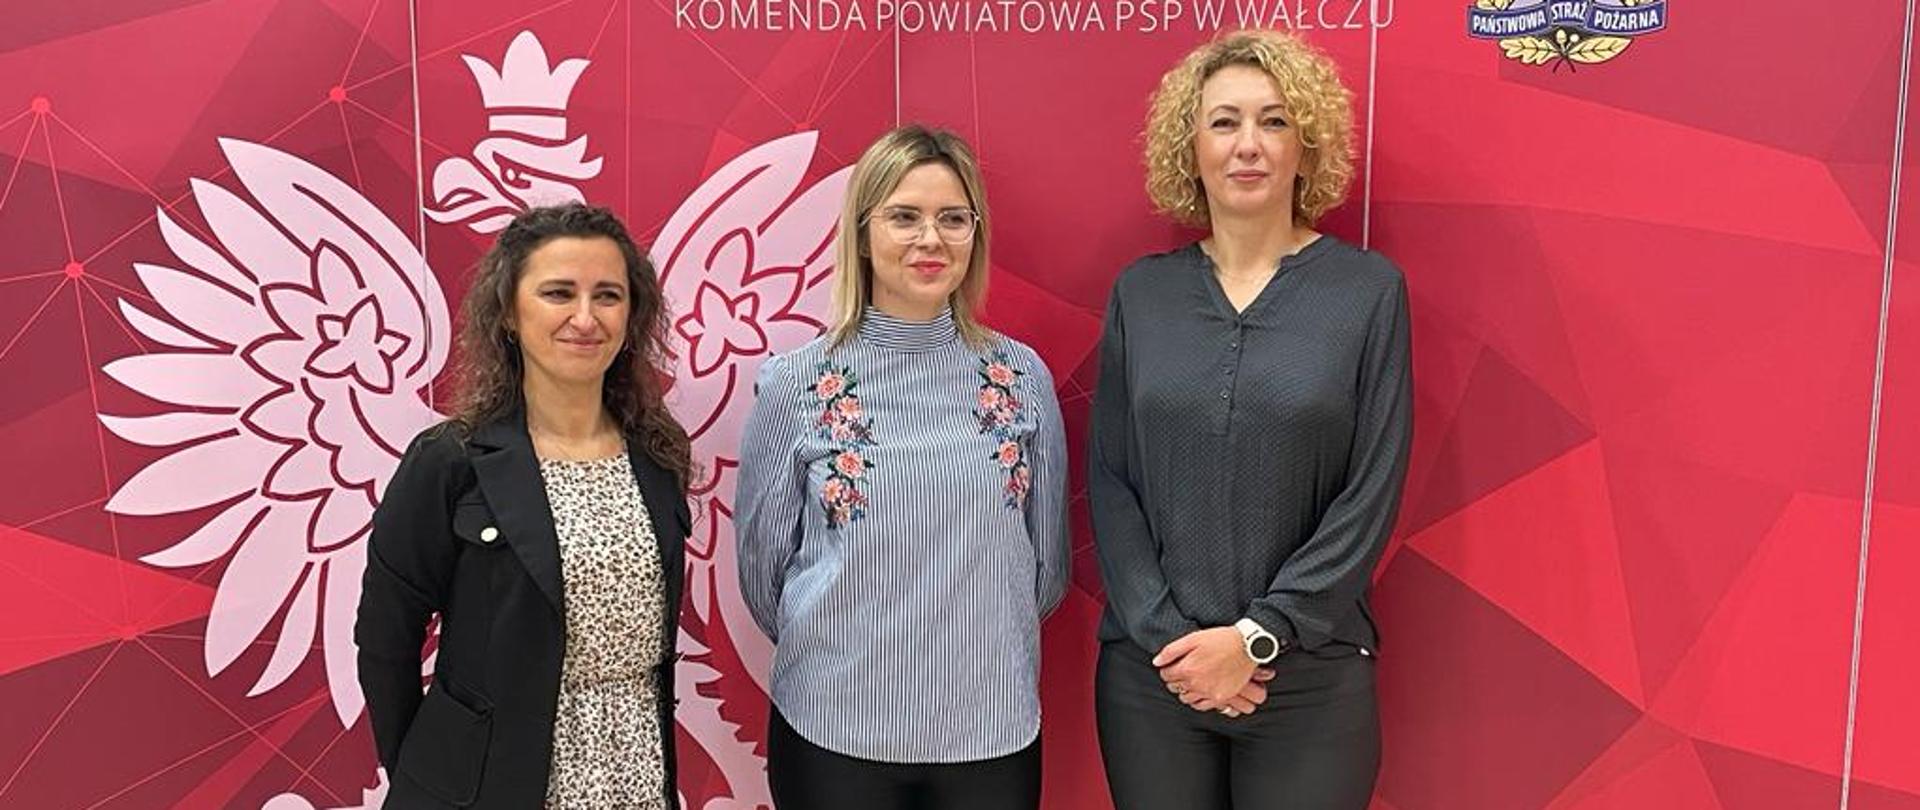 Nowi pracownicy Komendy Powiatowej PSP w Wałczu